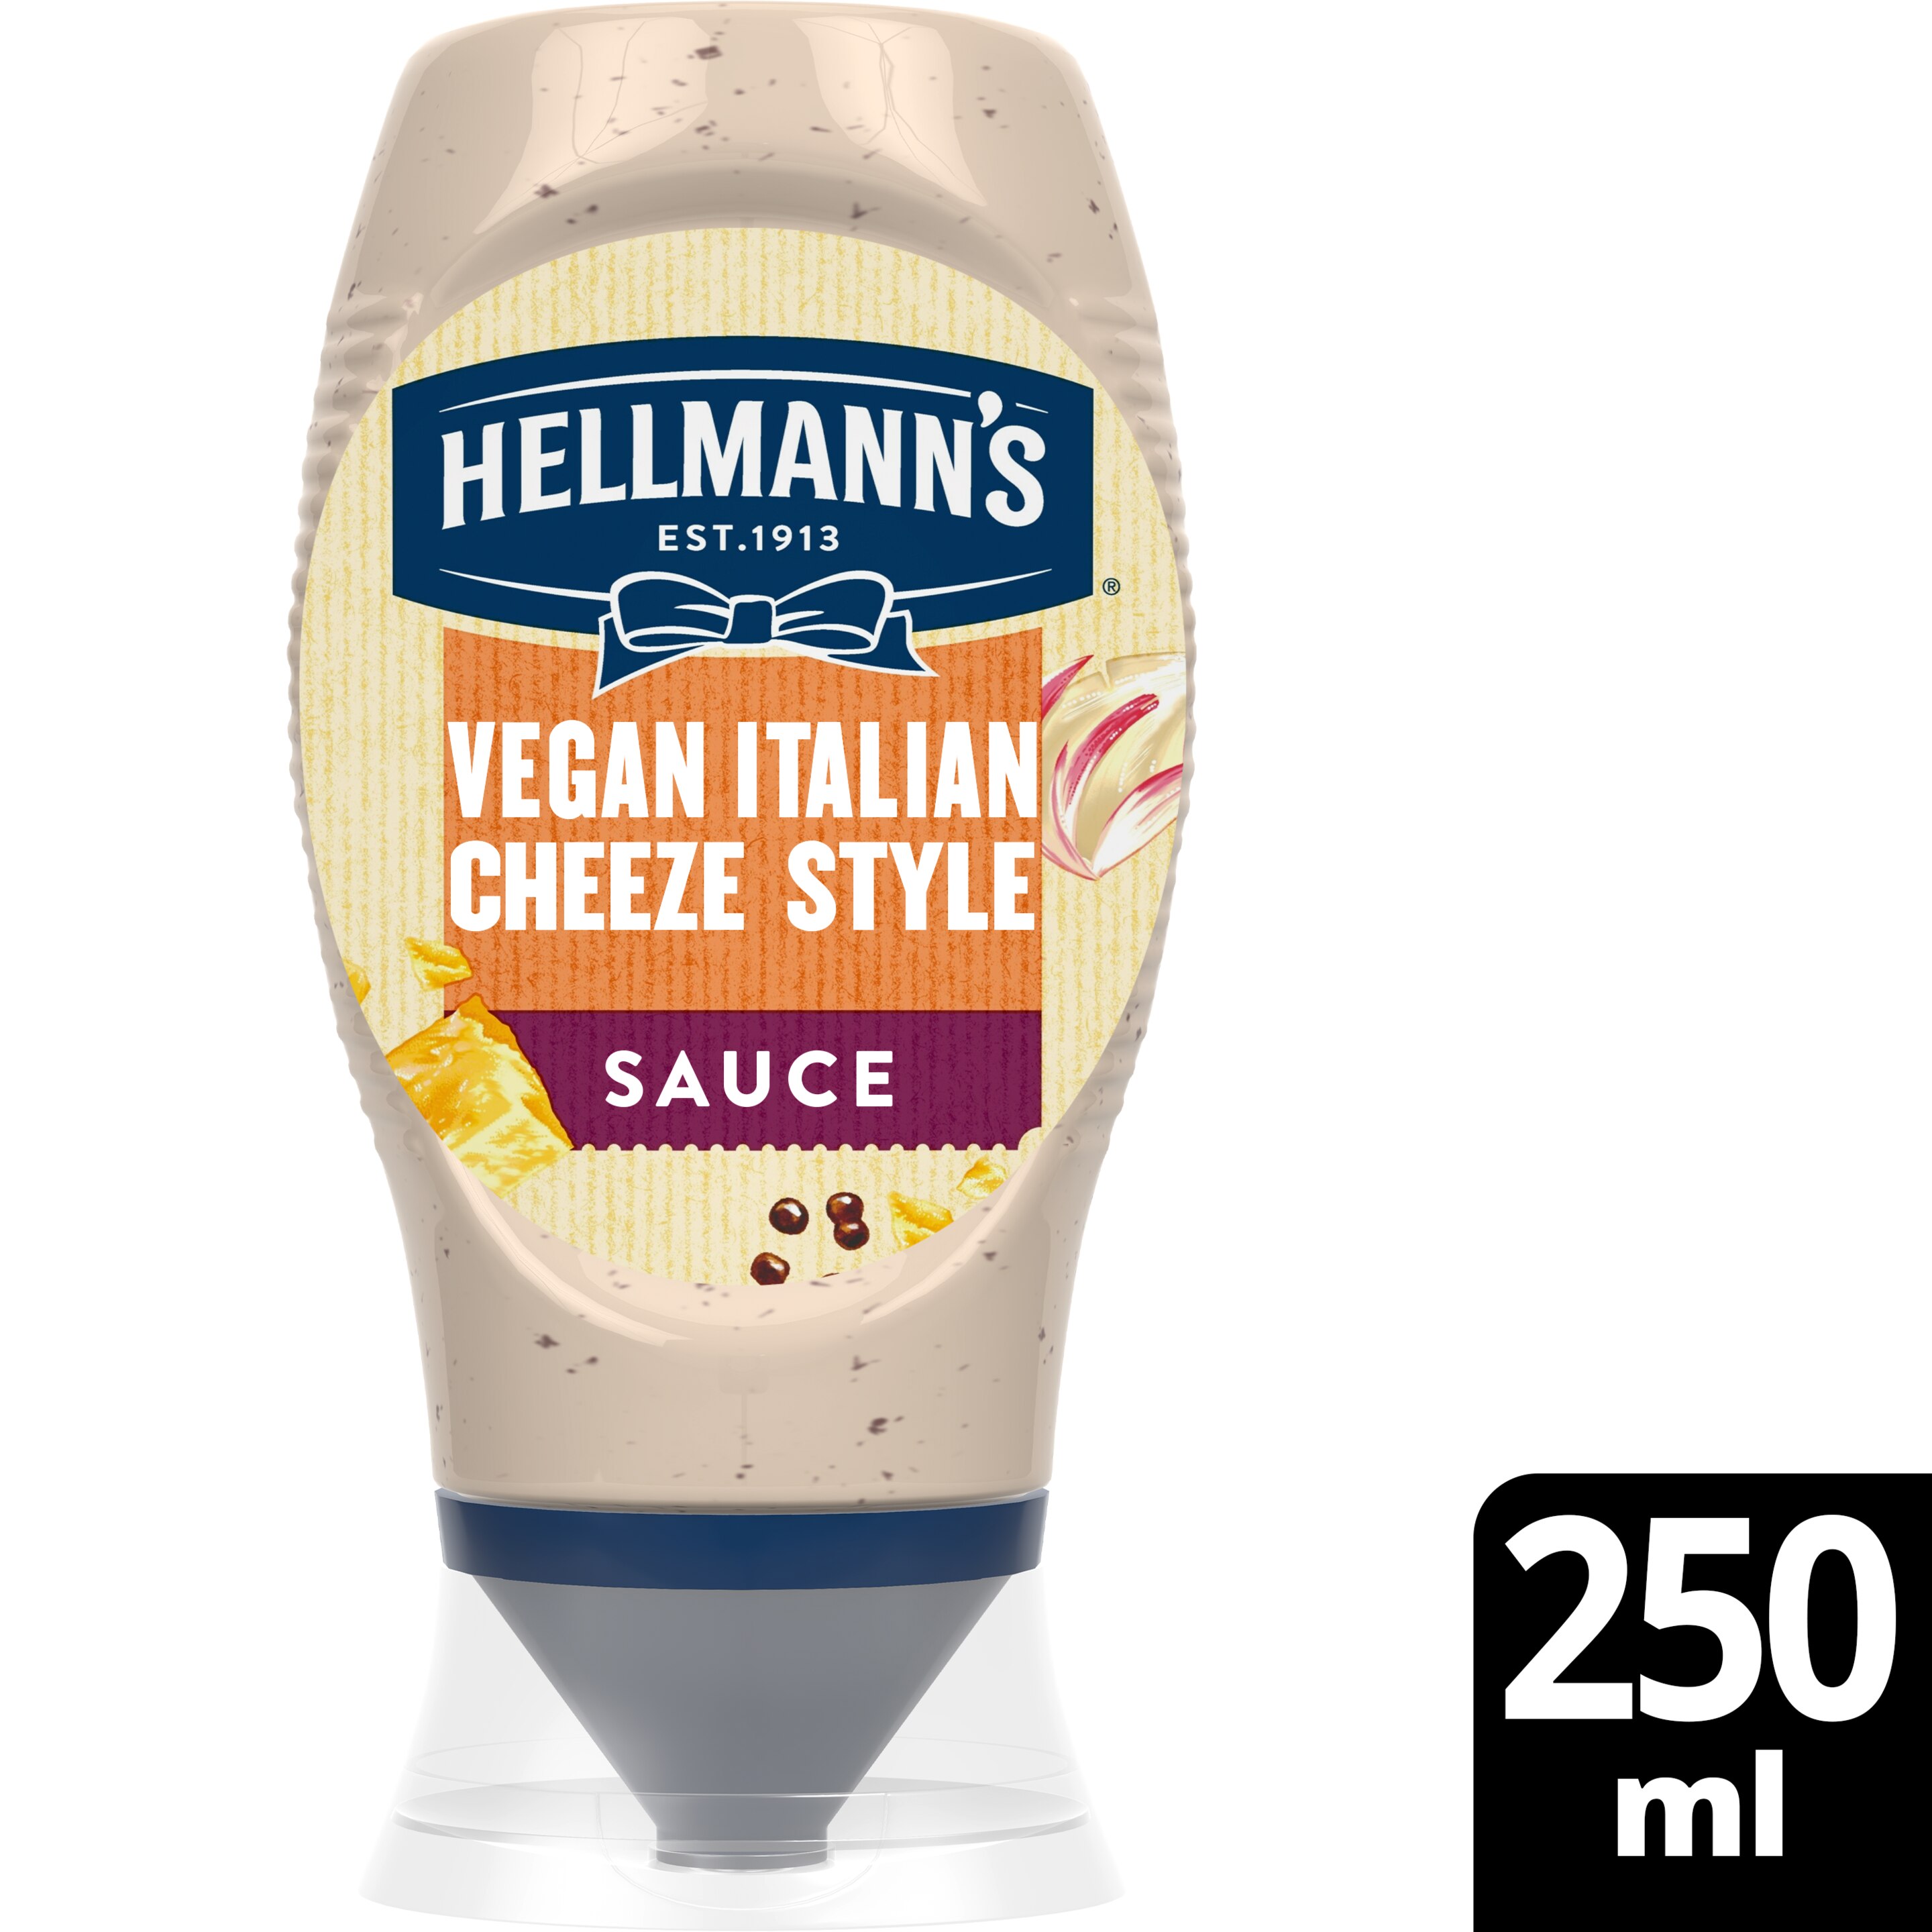 Hellmann's Vegan Italian Cheeze Style Sauce